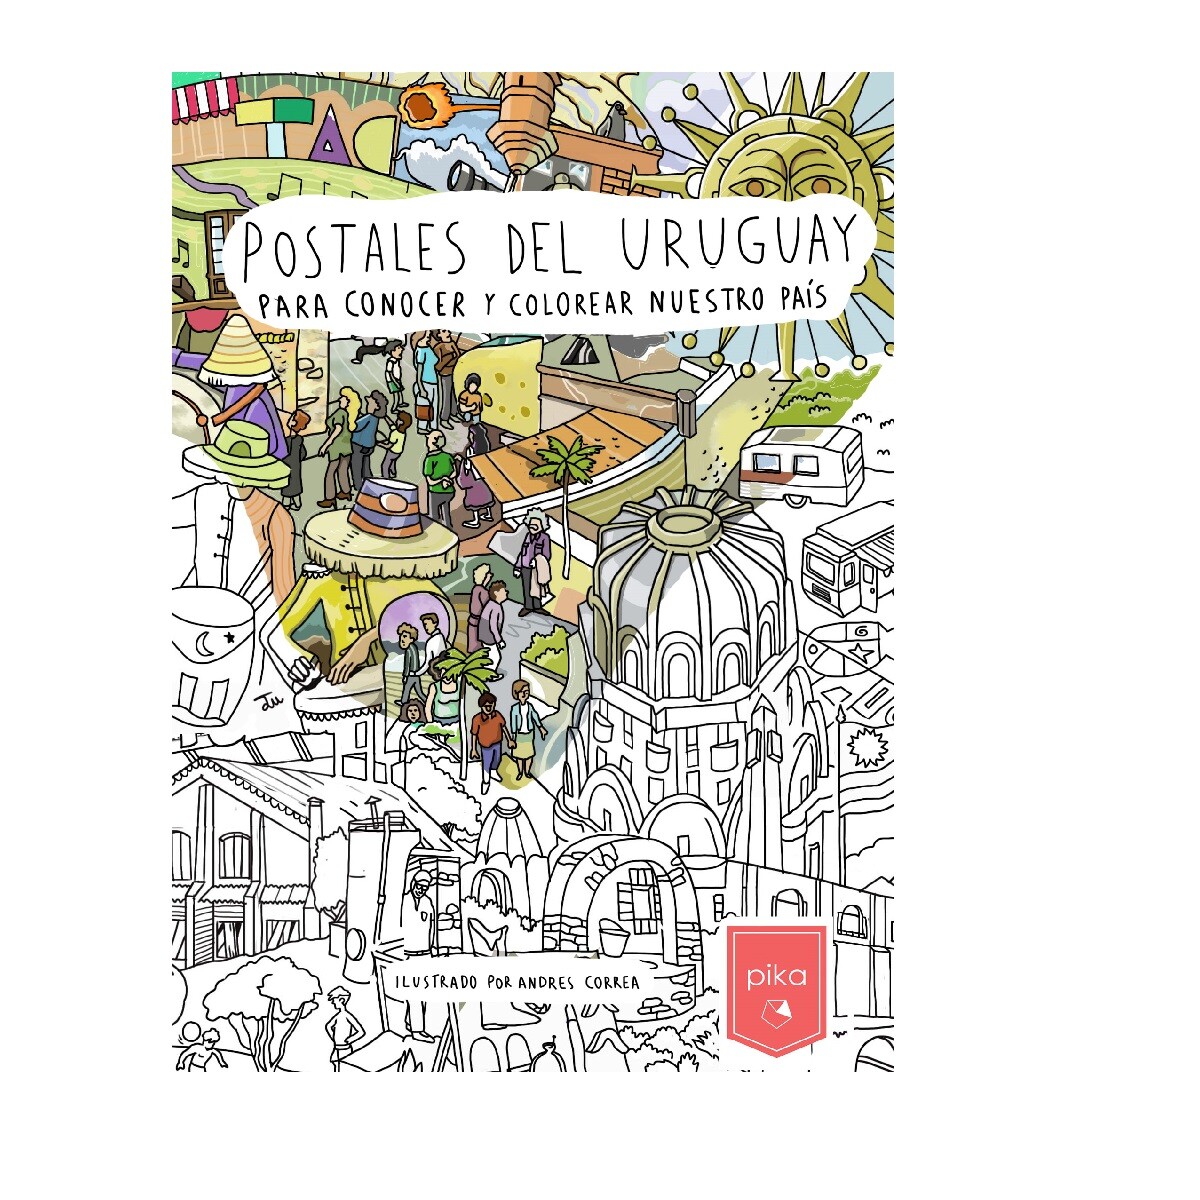 Postales del Uruguay para conocer y colorear nuestro pais - Único 